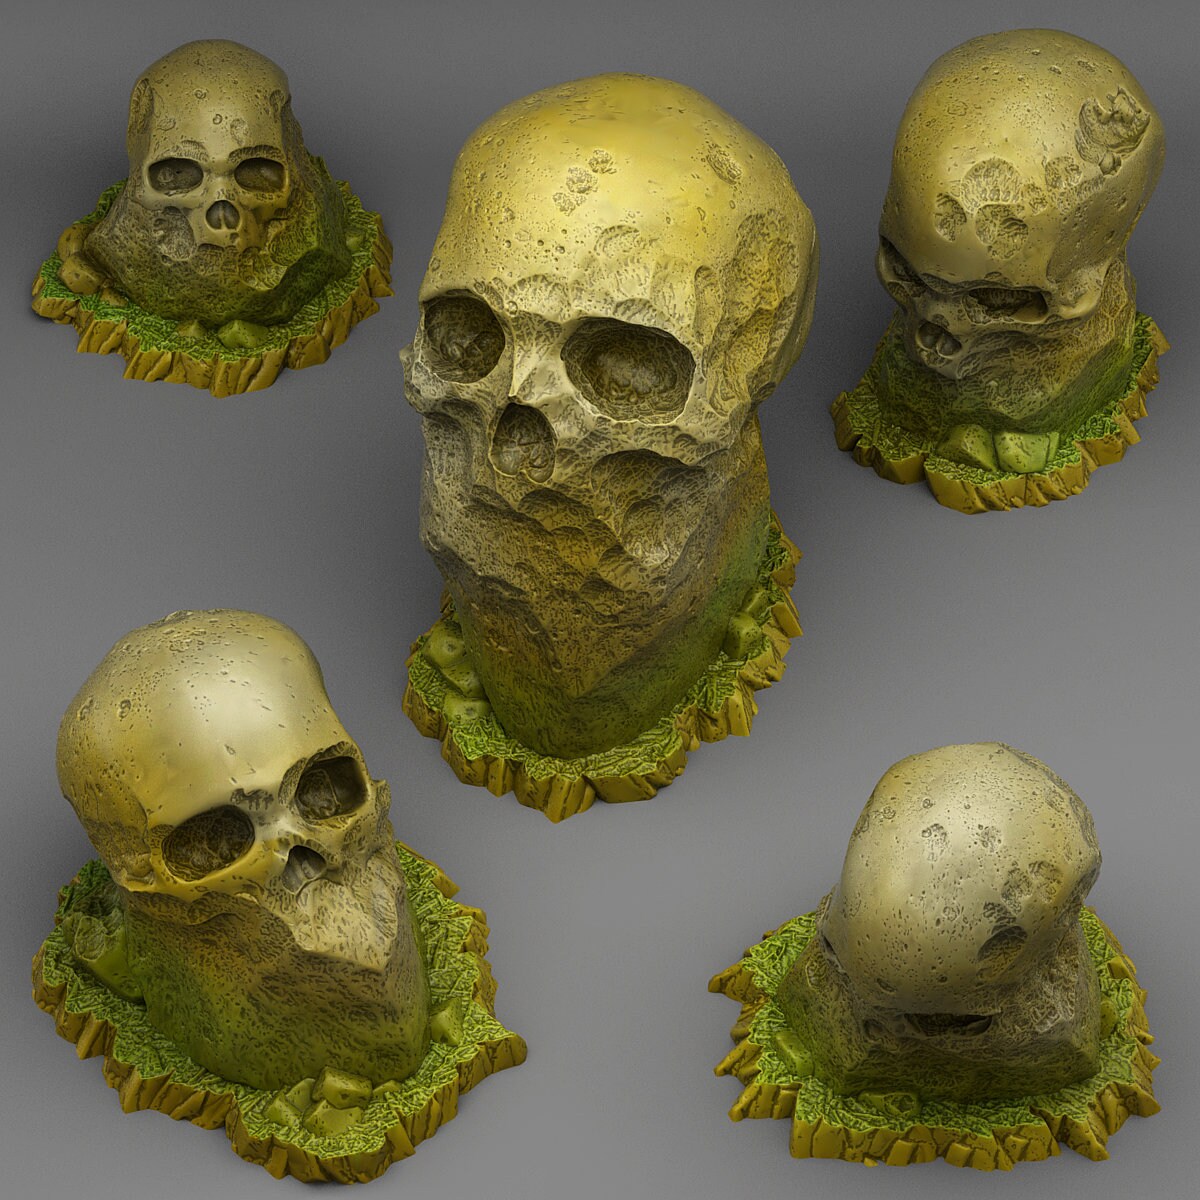 Giant Skull Stones Scatter Terrain - Fantastic Plants and Rocks 